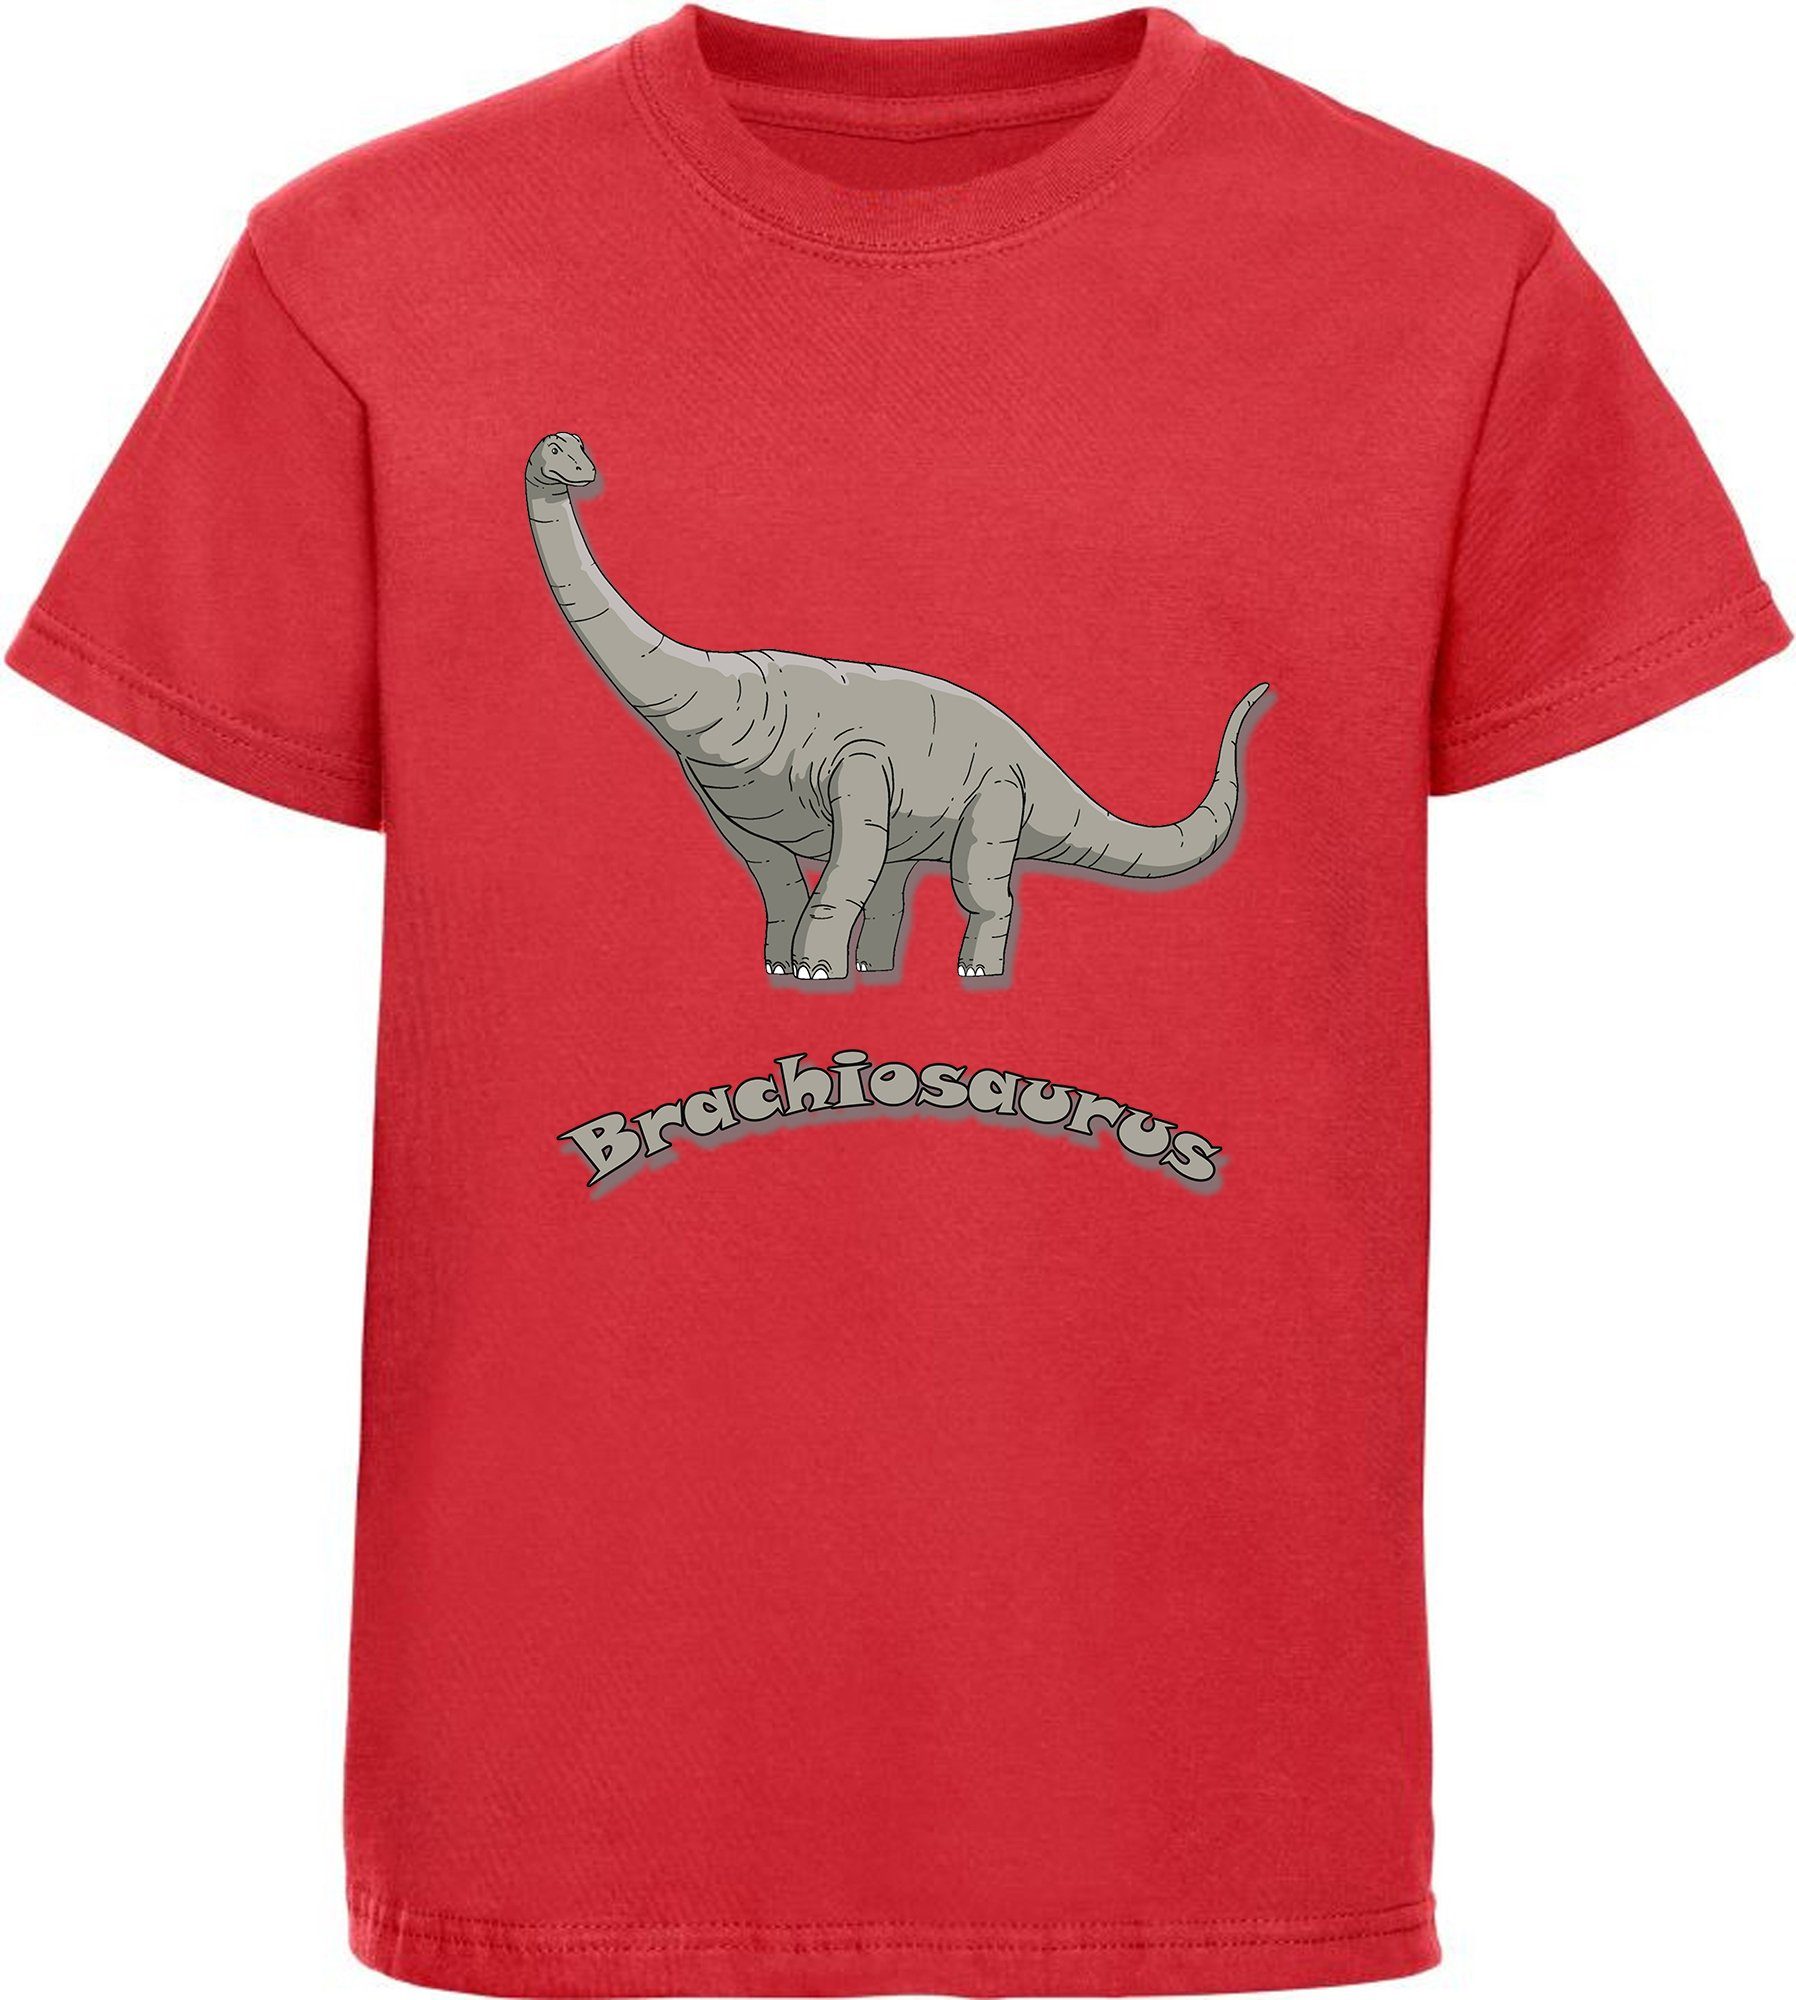 MyDesign24 Print-Shirt bedrucktes Kinder Dino, blau, mit T-Shirt schwarz, Baumwollshirt rot, mit Brachiosaurus weiß, i66